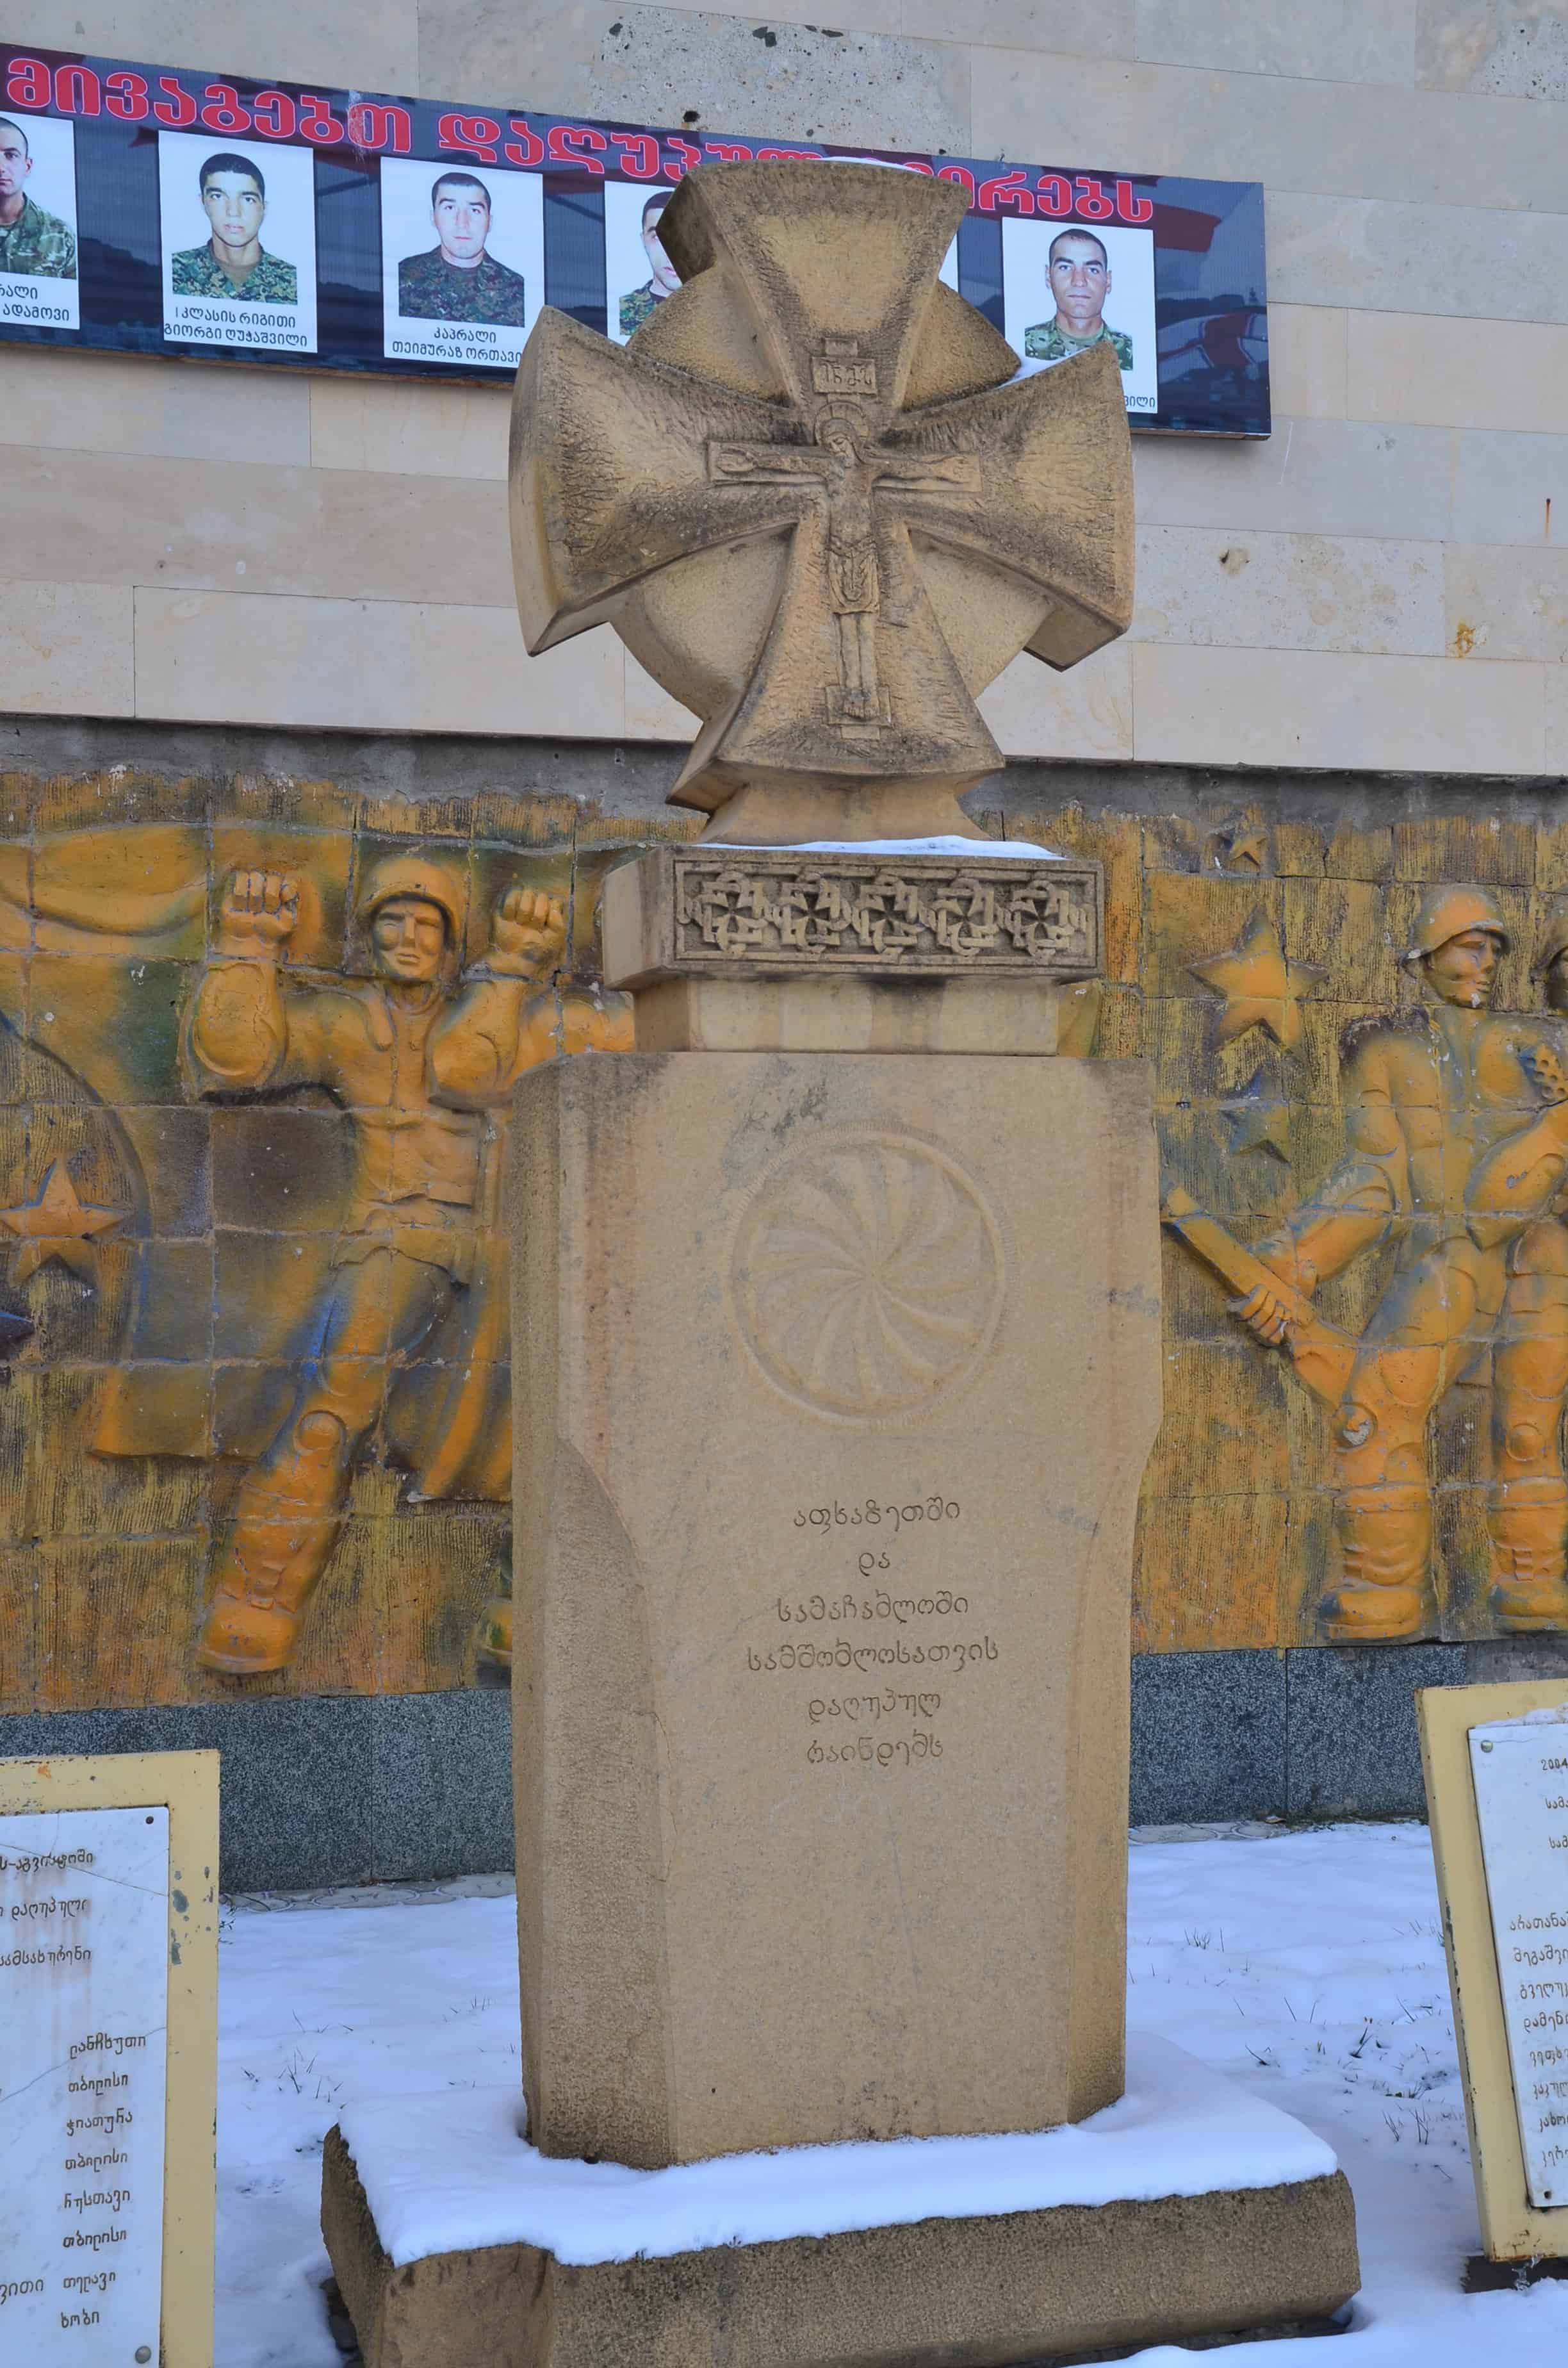 WWII memorial in Gori, Georgia